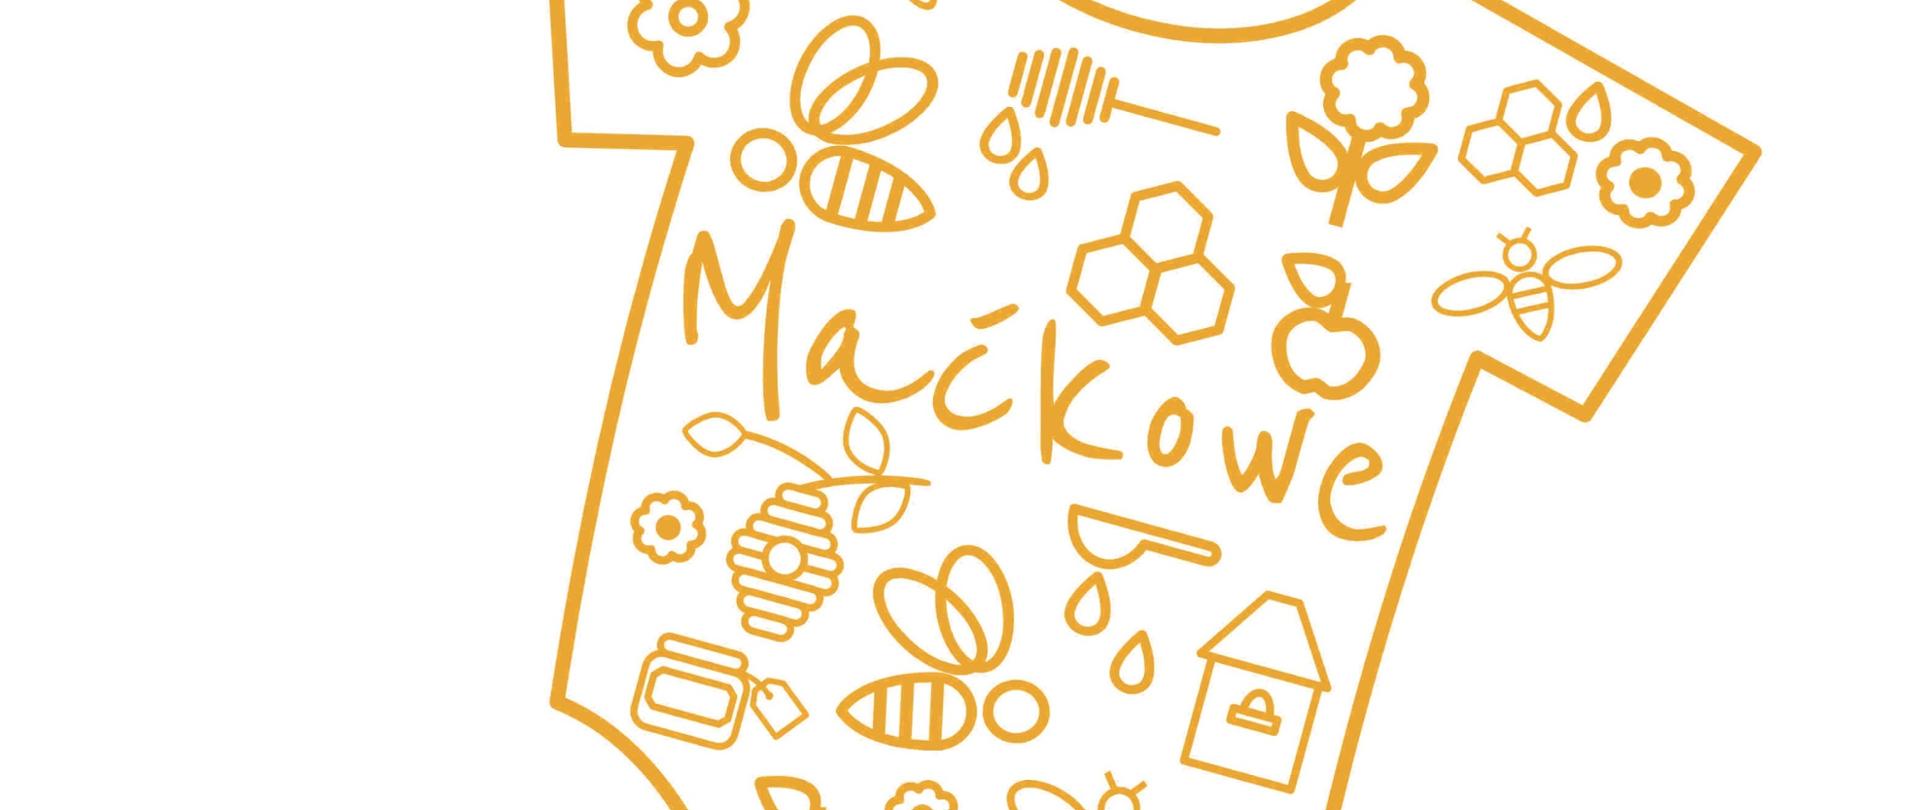 zdjęcie przedstawia dziecięce body w ciemno żółtym kolorze z napisem Maćkowe oraz obrazkami z motywami pszczelarskimi, takimi jak pszczółka, plaster miody, łyżka do miodu, ul. kwiaty